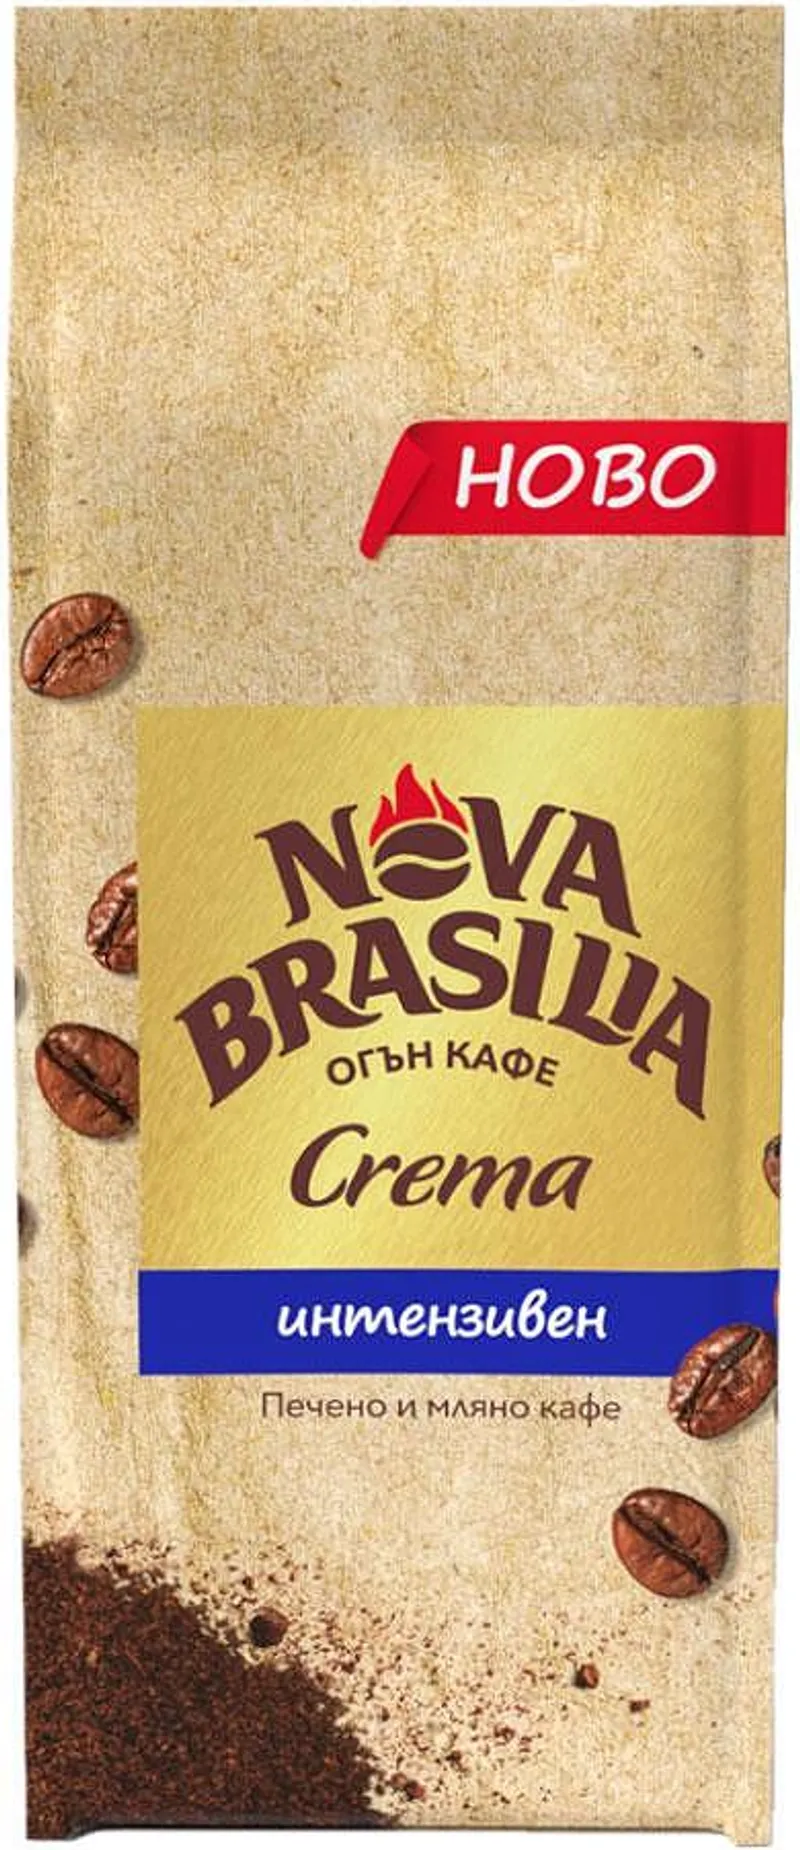 Кафе NOVA BRASILIA Crema Интенз. 225гр